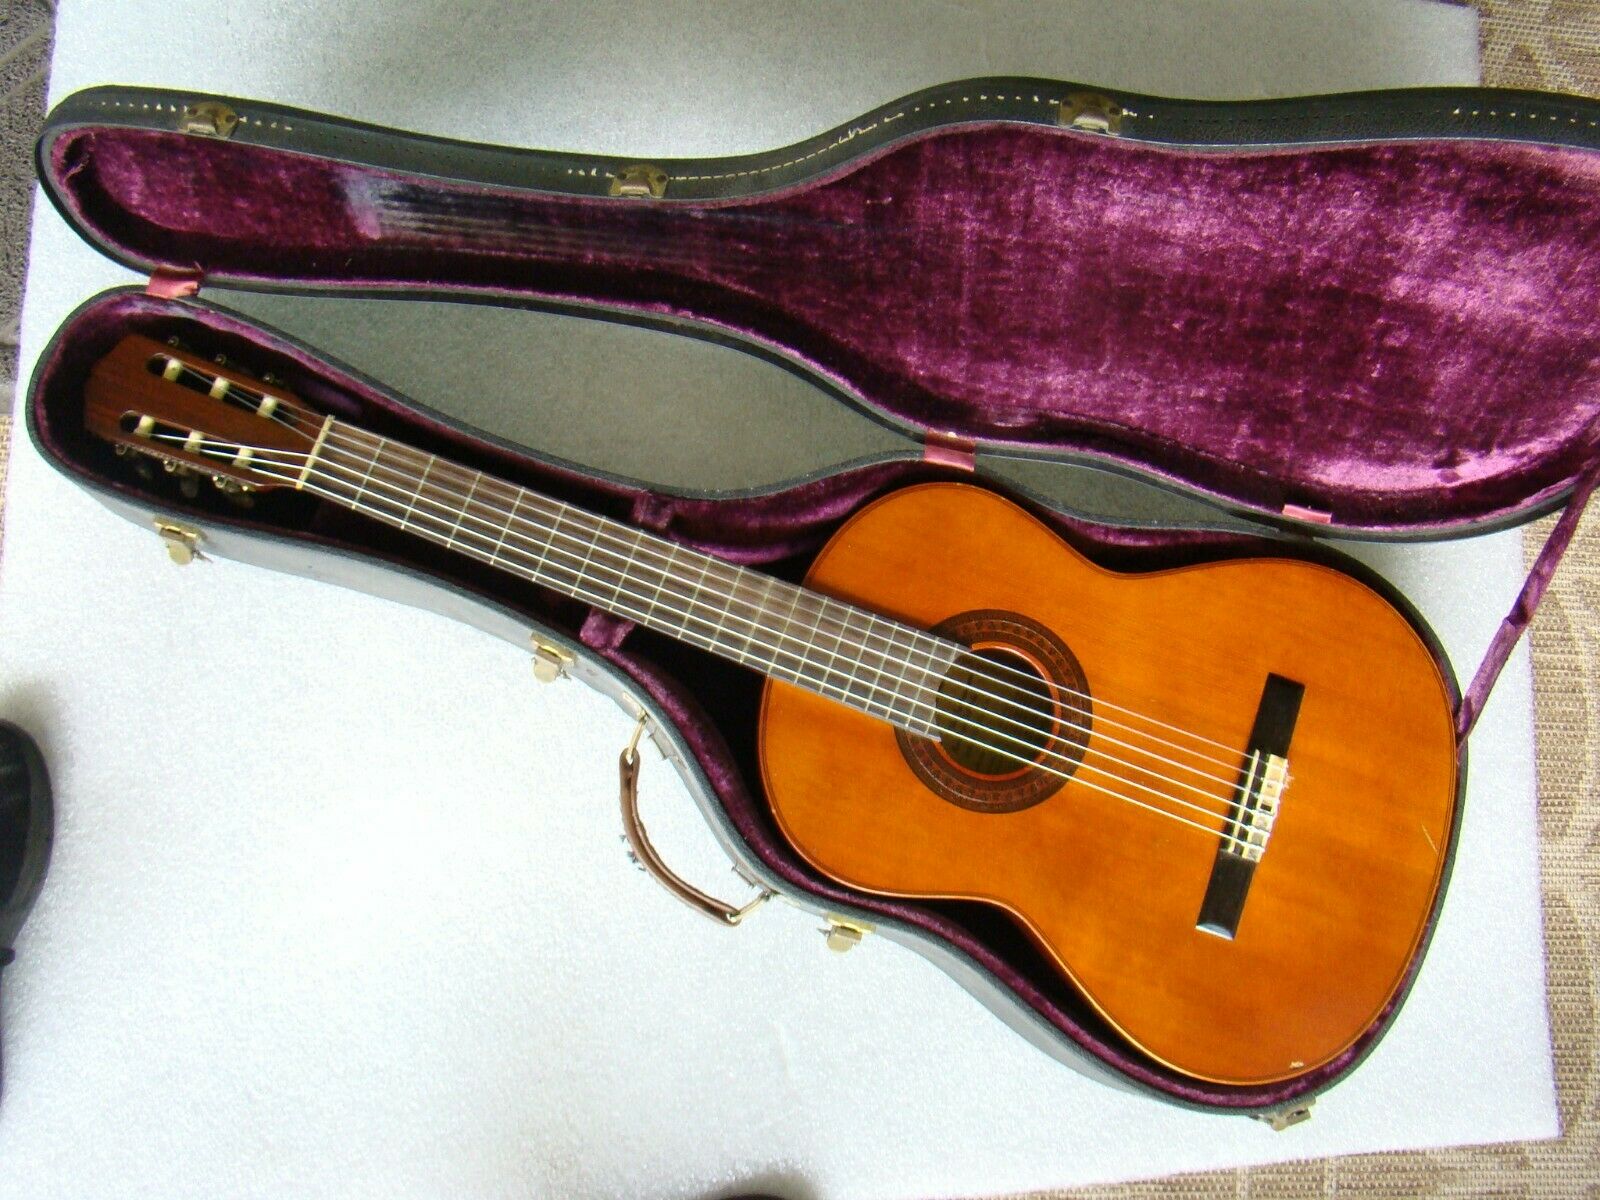 Gibson Classical C-300 Sn 679980    Original Case